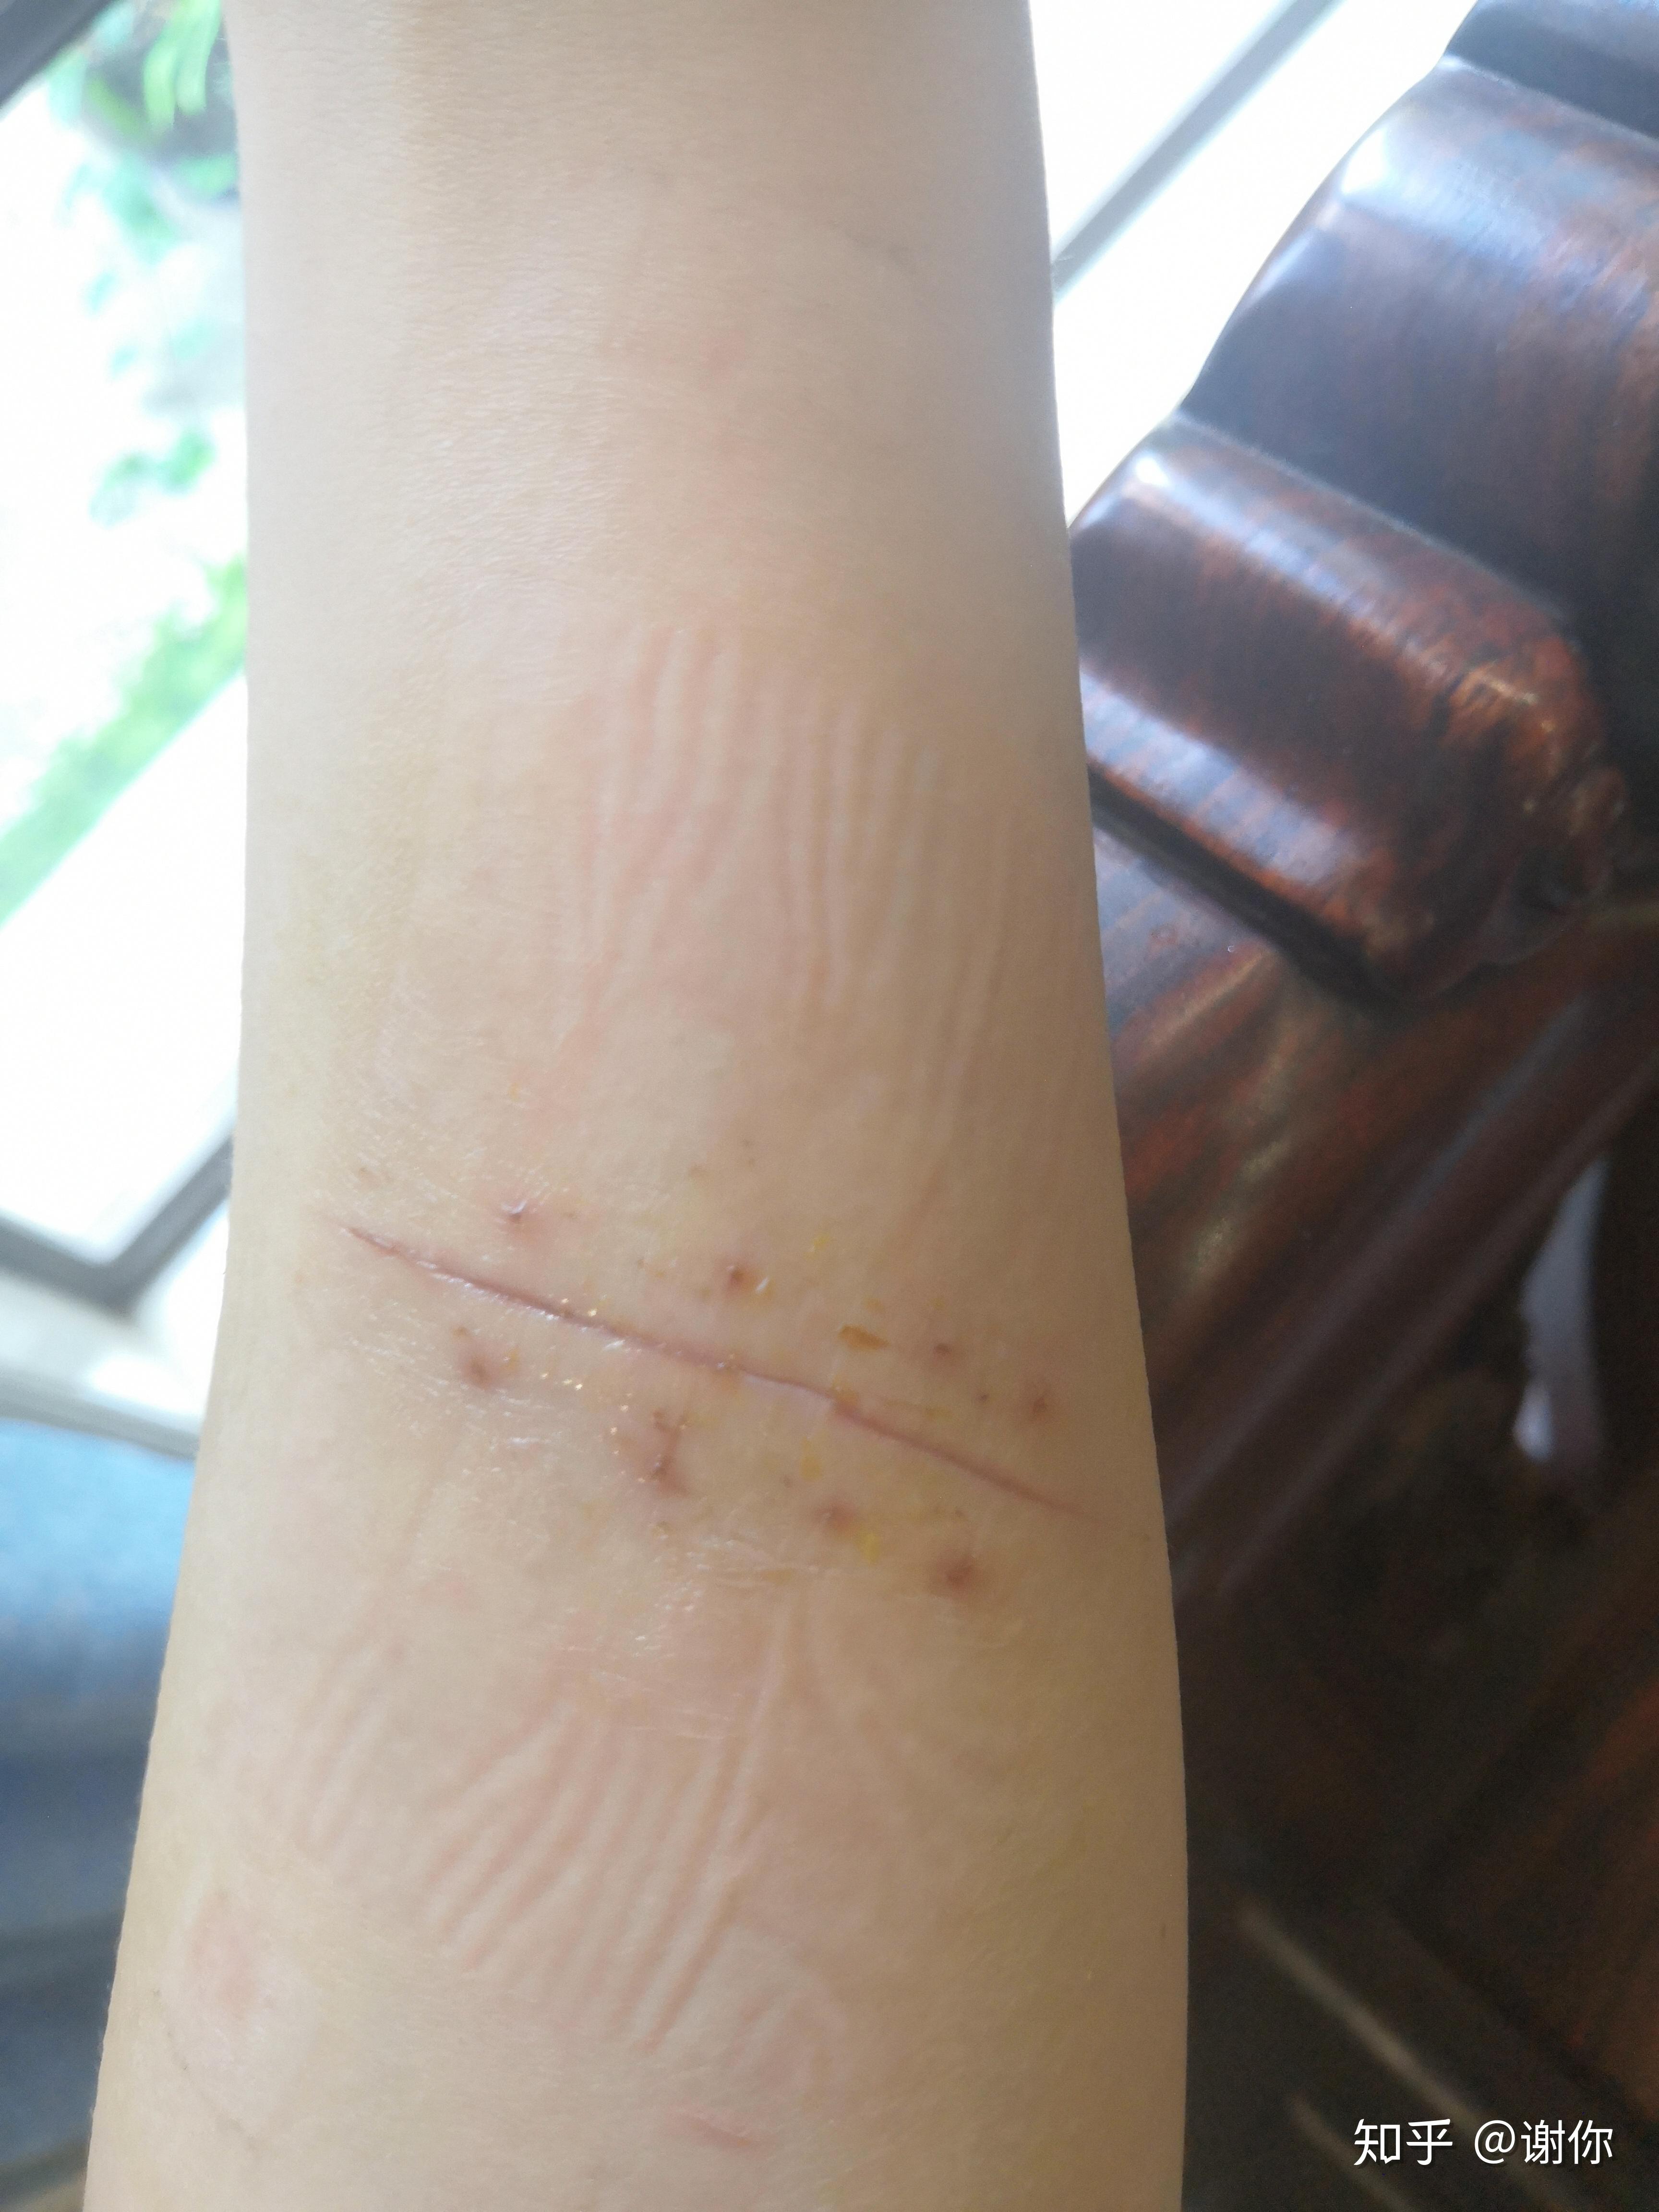 手臂刀割伤疤痕预防修复打卡记录